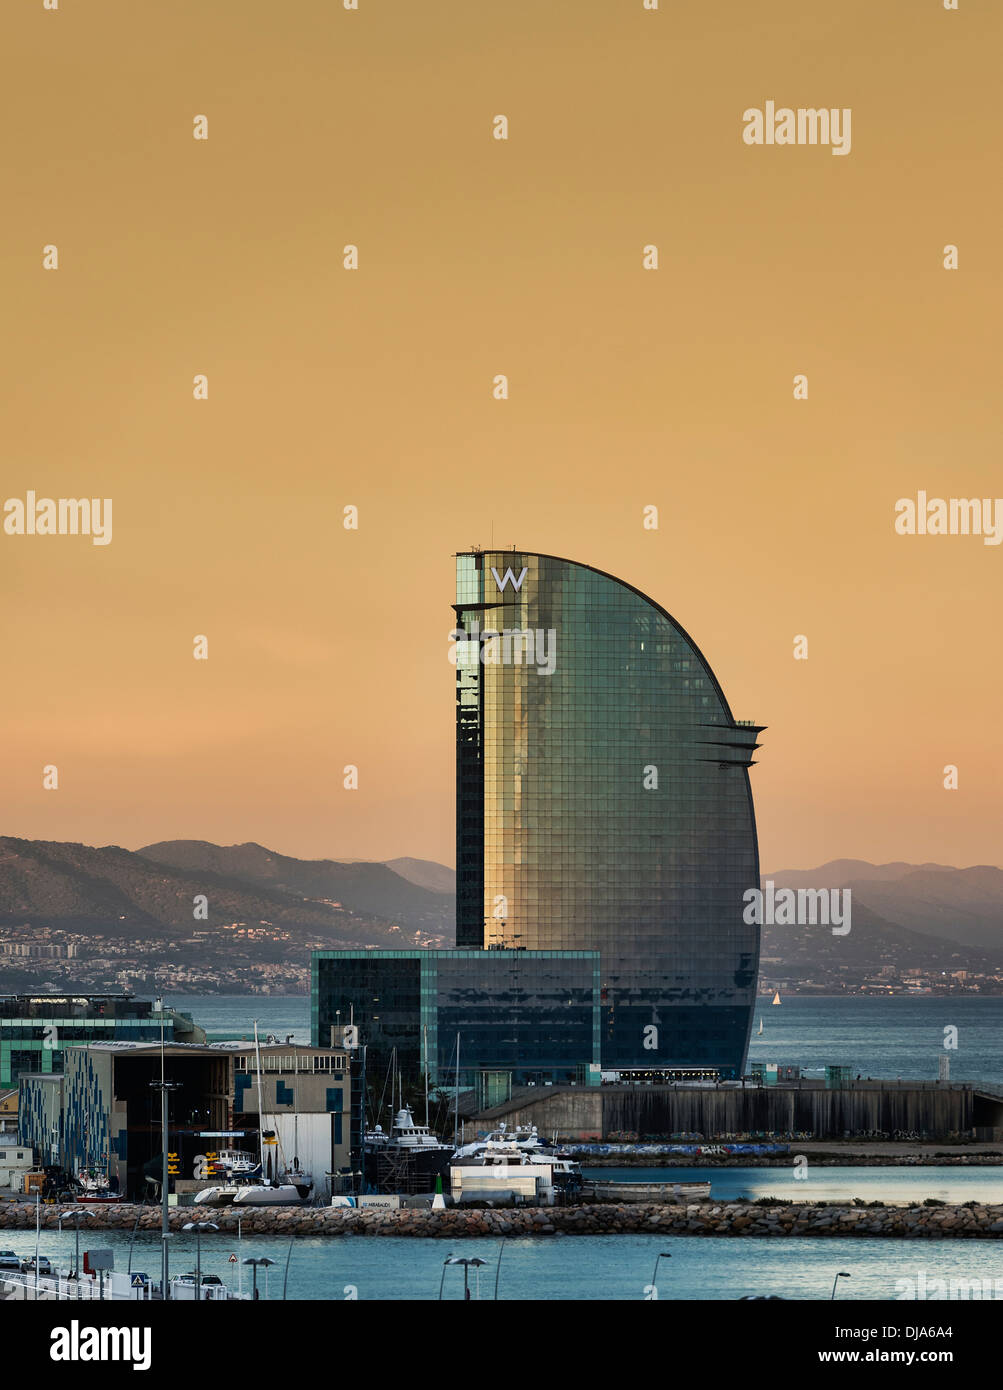 Hôtel W ou l'hôtel Vela par l'architecte Ricardo Bofill, Barcelone, Espagne Banque D'Images